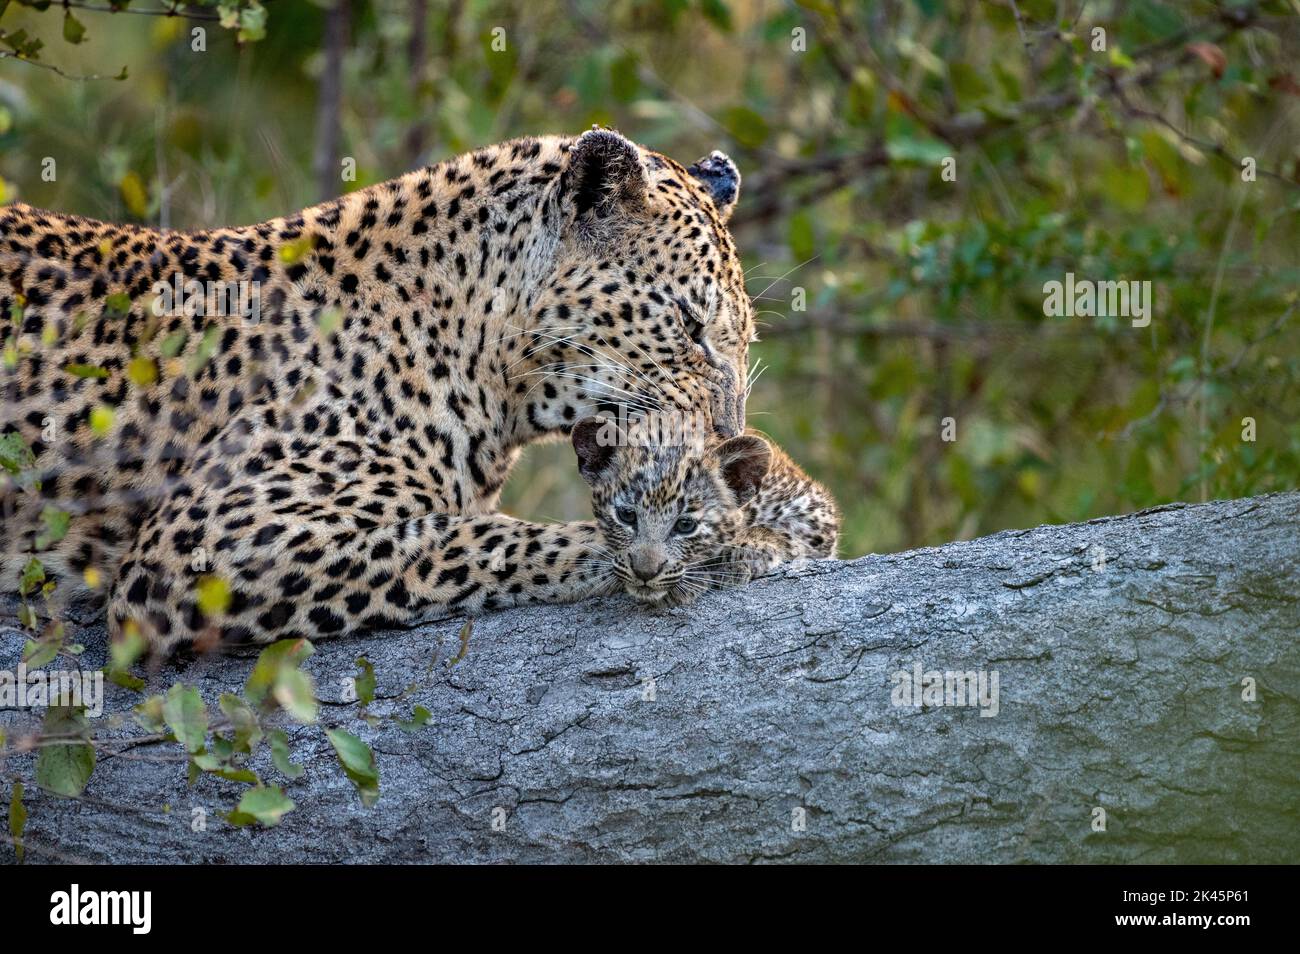 Un leopardo y su cachorro, Panthera pardus, se acuestan juntos en un tronco mientras el leopardo limpia su cachorro Foto de stock